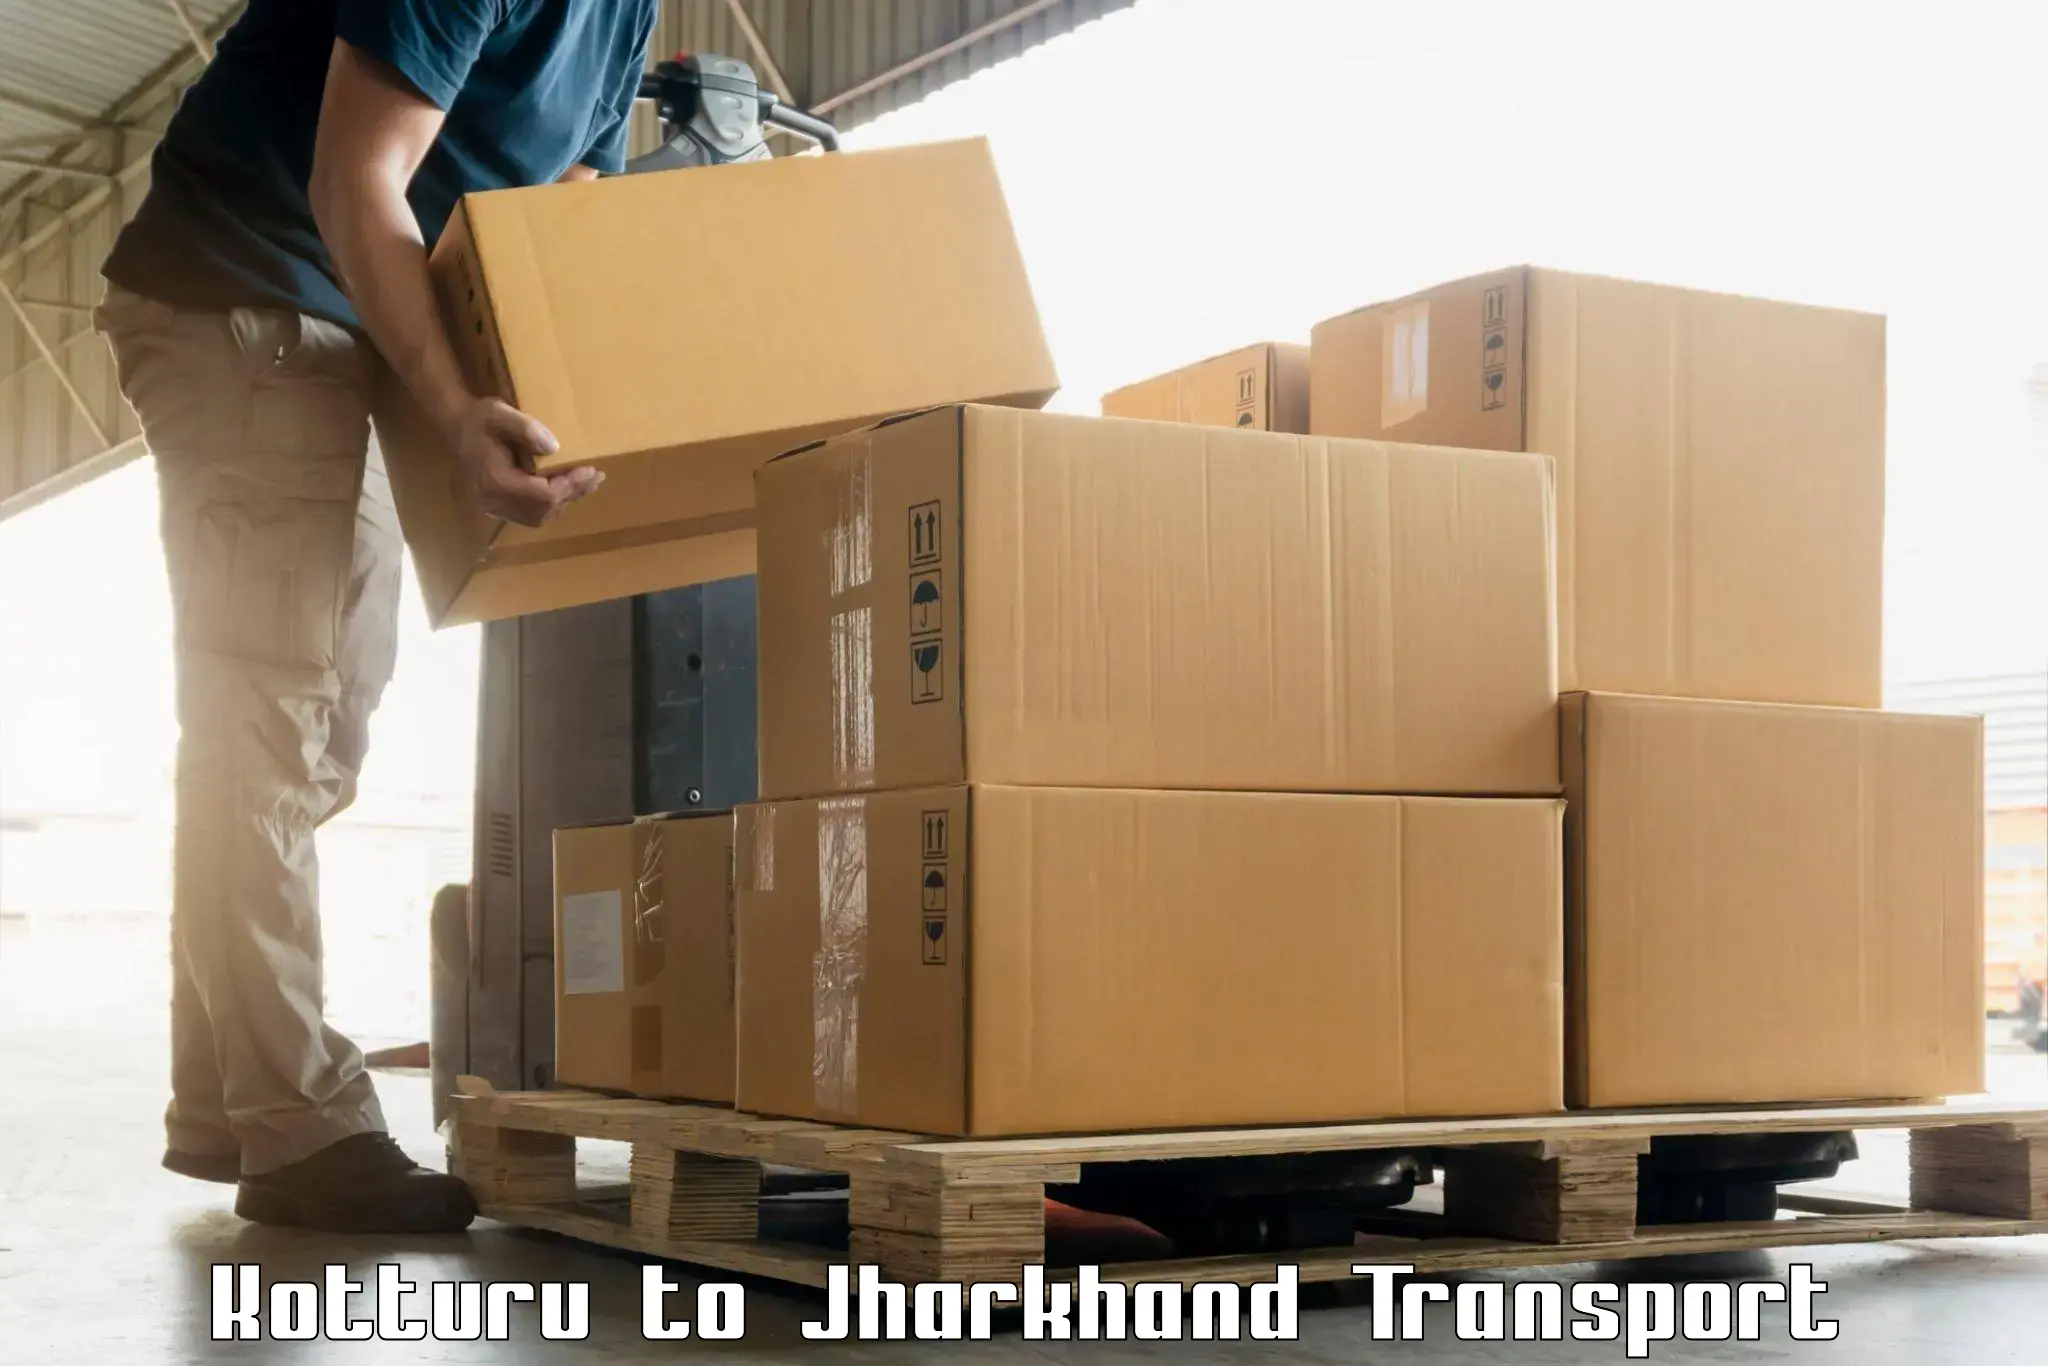 Air freight transport services Kotturu to Domchanch